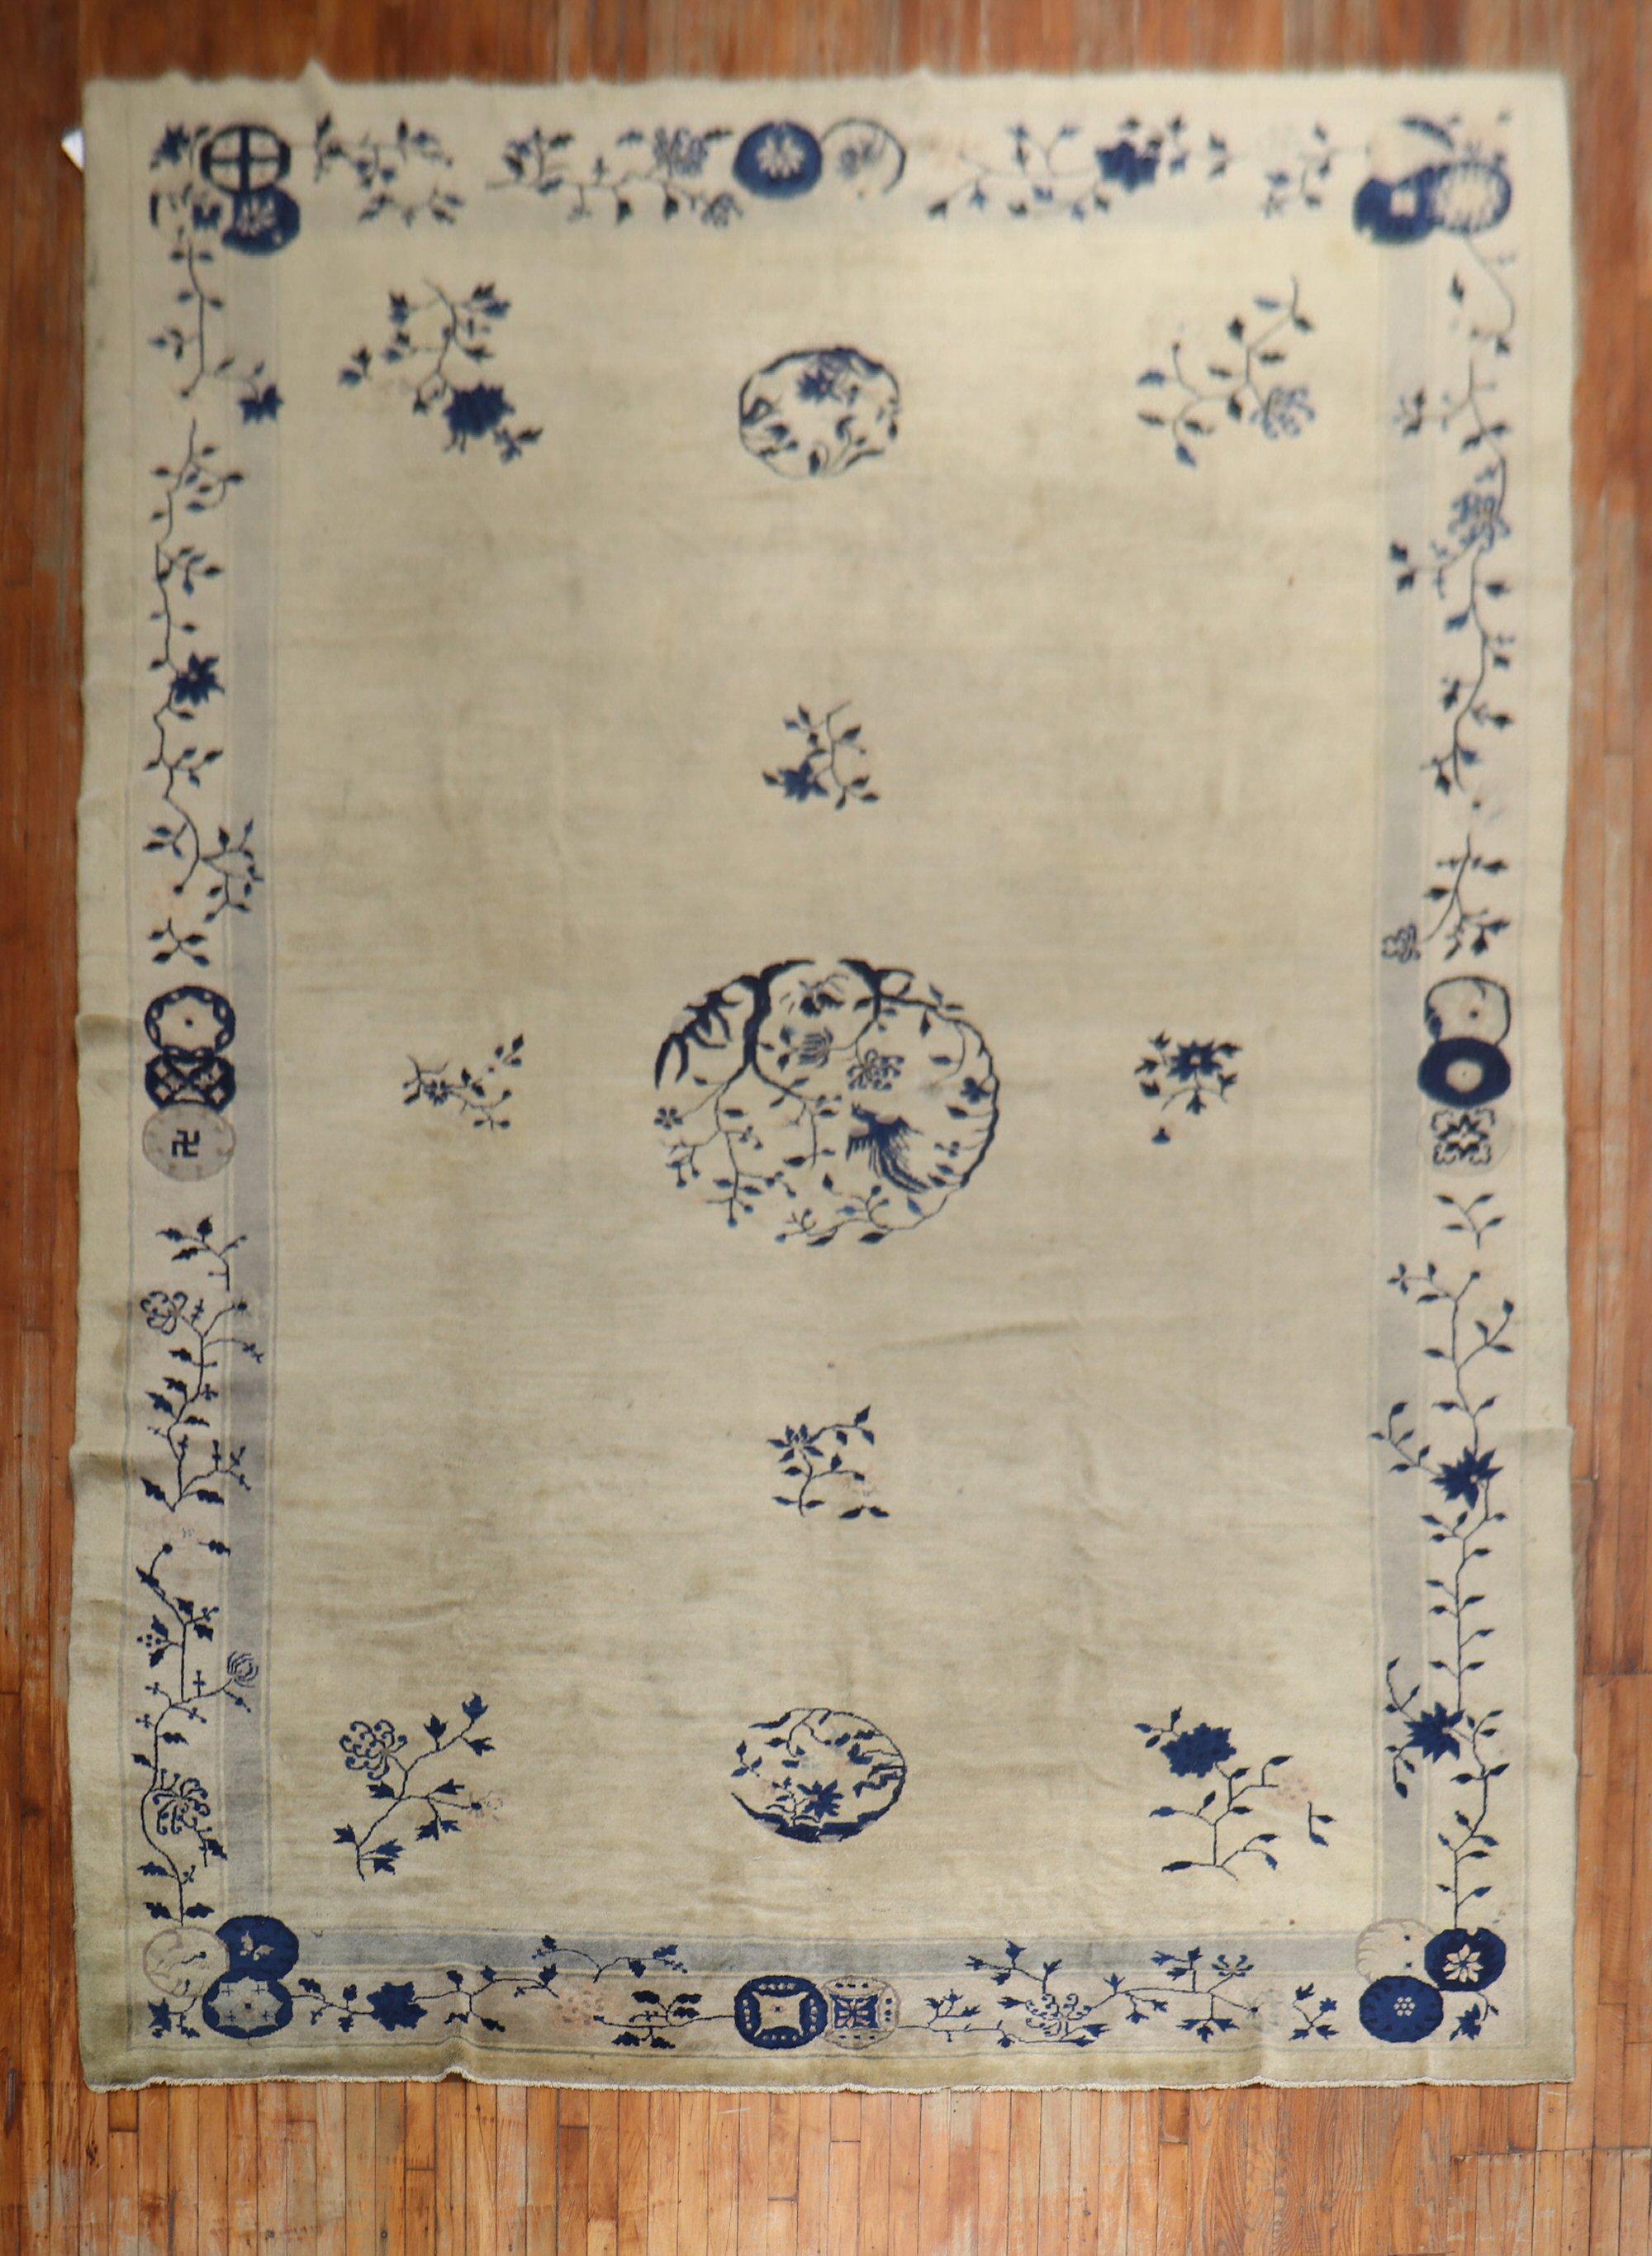 Ein zimmergroßer chinesischer Teppich aus dem frühen 20. Jahrhundert in der Farbfamilie Marine, Beige und Grau. Die Wolle und die Haptik des Teppichs sind sehr weich an den Füßen. Außerdem hat es einen seidigen Glanz.

Maße: 9'3'' x 14'3''.